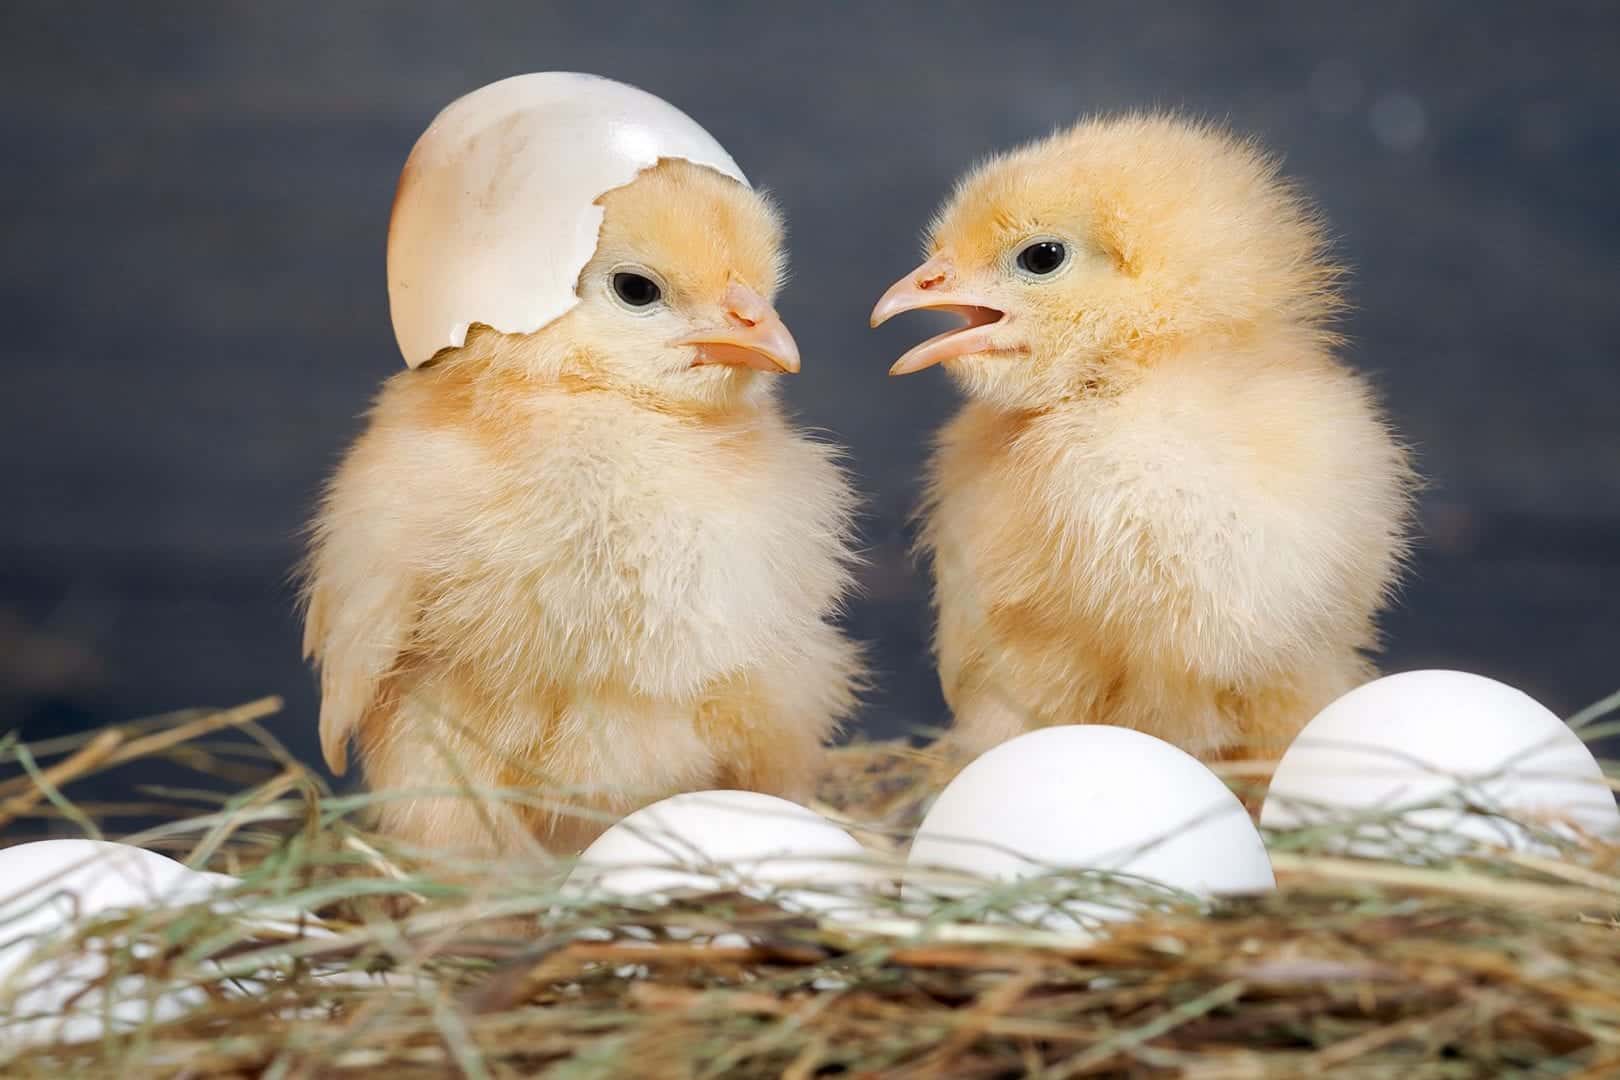 Quem nasceu primeiro o ovo ou a galinha? - A resposta definitiva